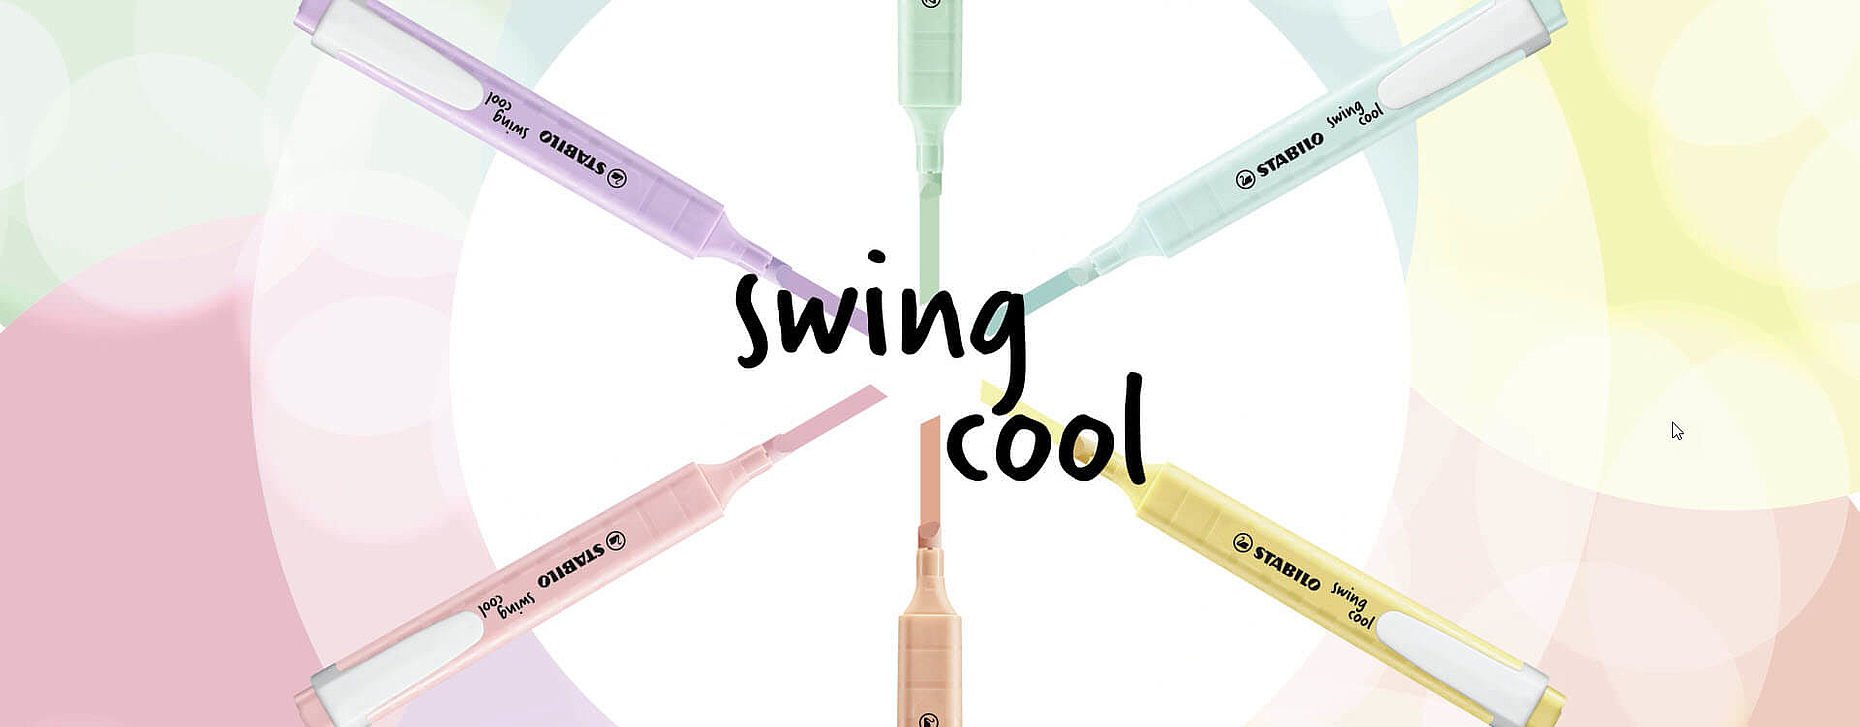 Stabilo Swing Cool - Evidenziatore - Grigio Polvere Pastello